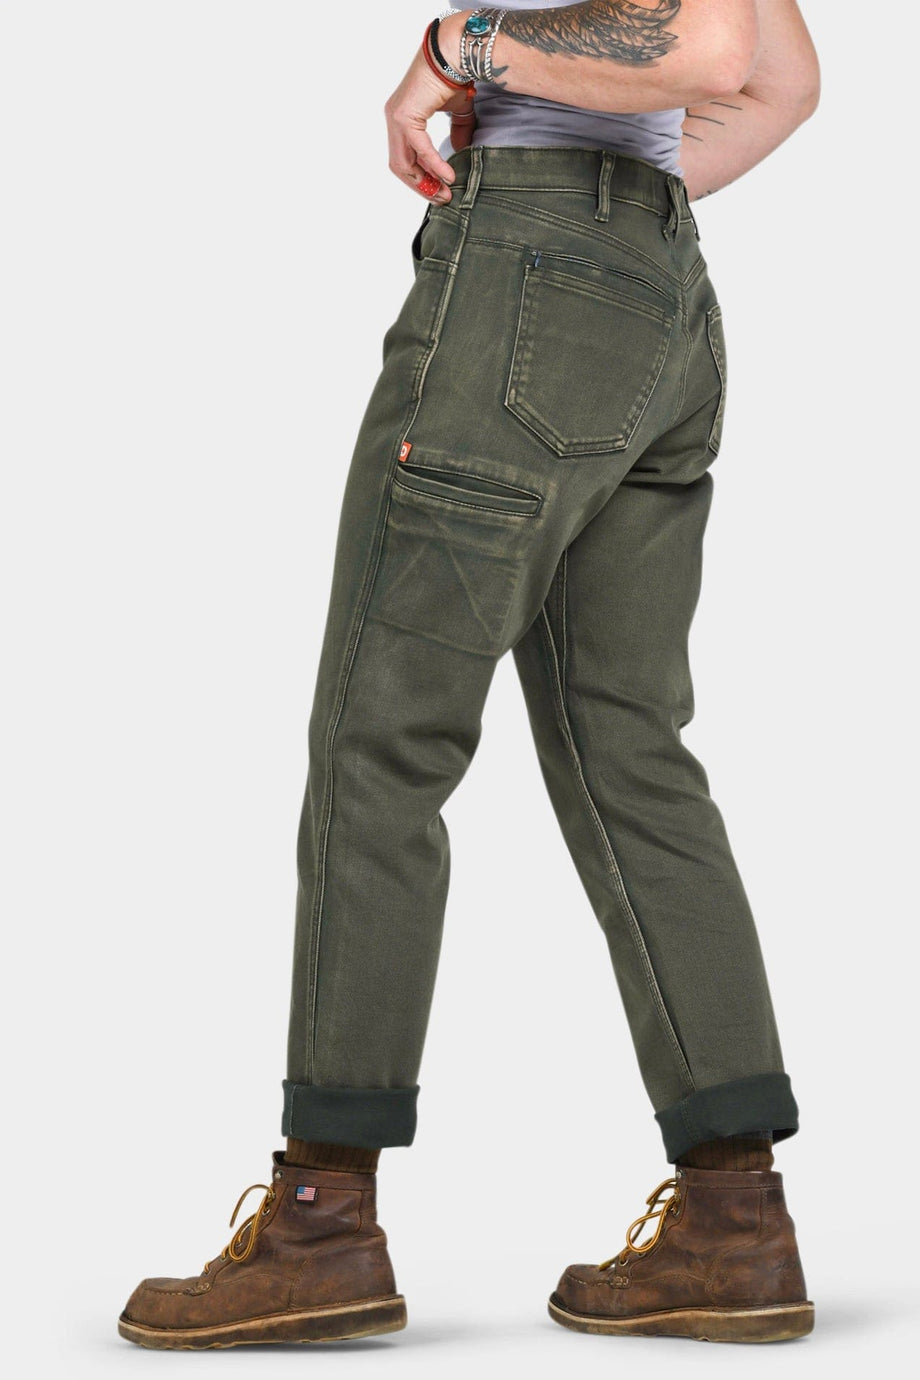 Women's Double-Front Pants - Stretch Carpenter Pants